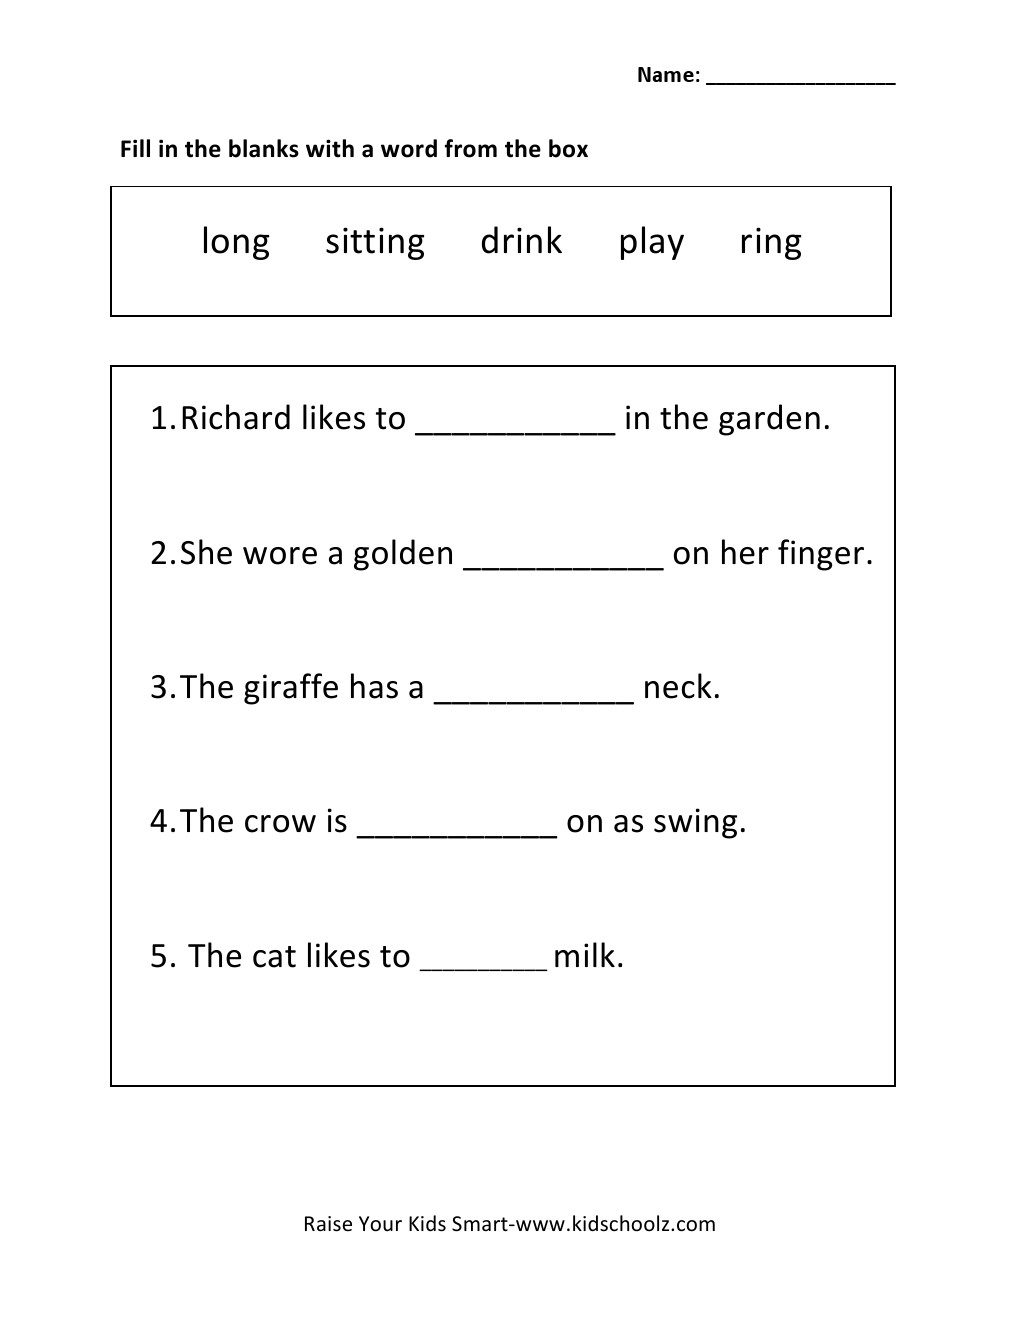 sentence-completion-worksheets-for-kids